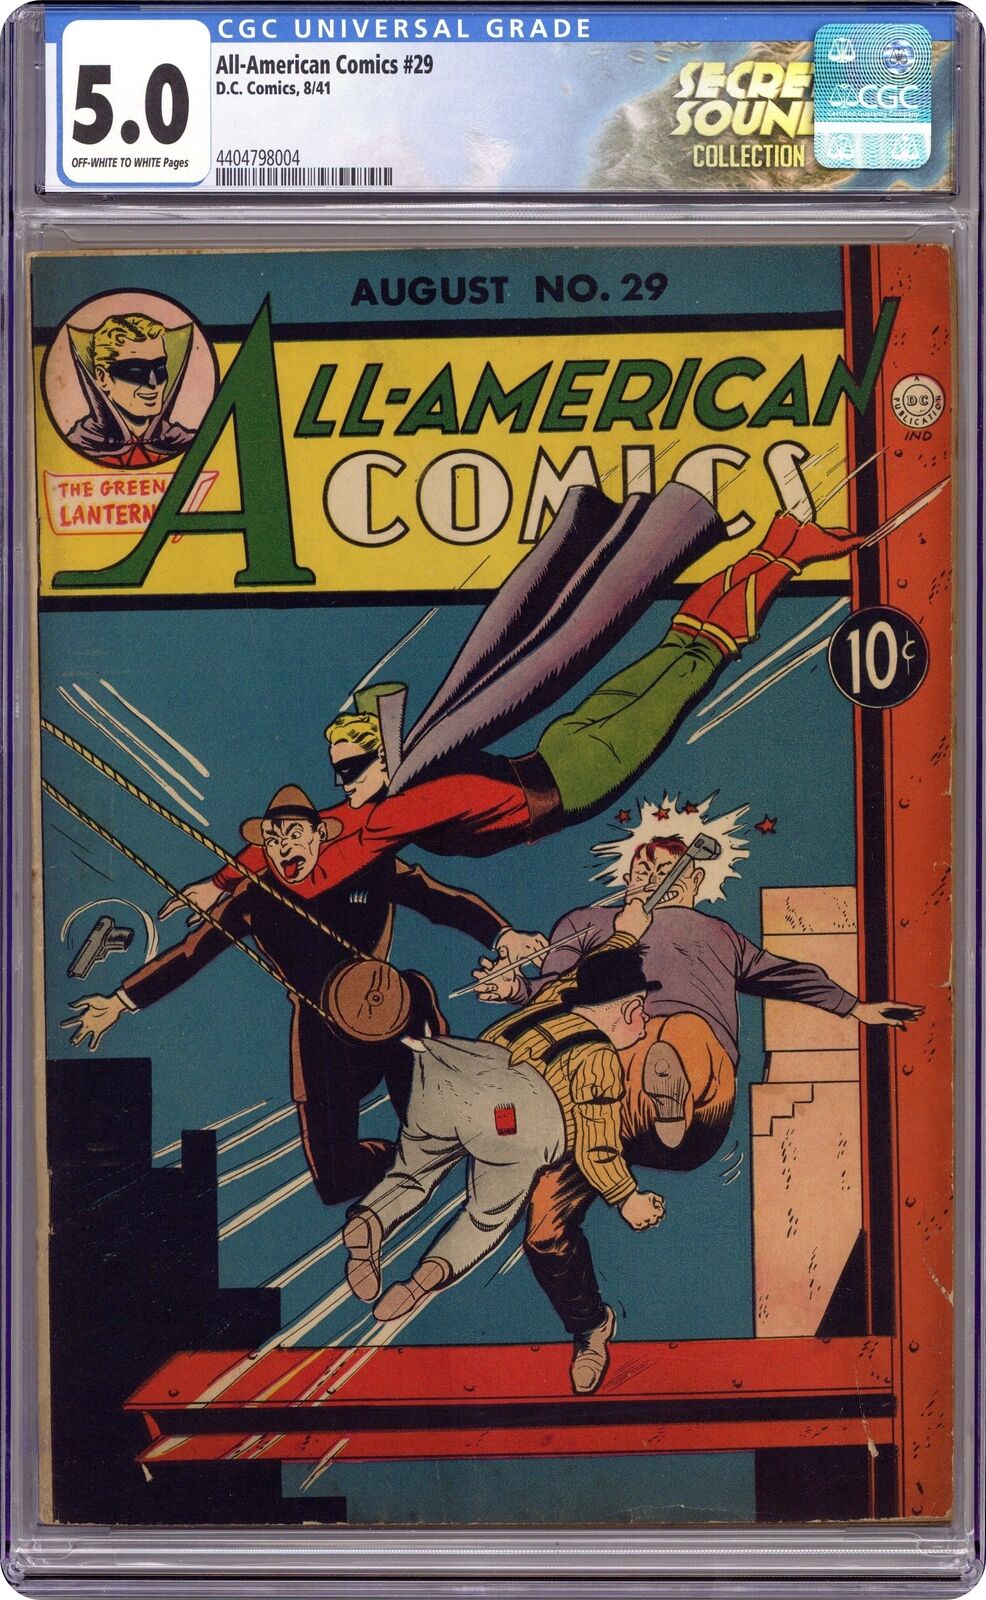 All-American Comics #29 CGC 5.0 1941 4404798004